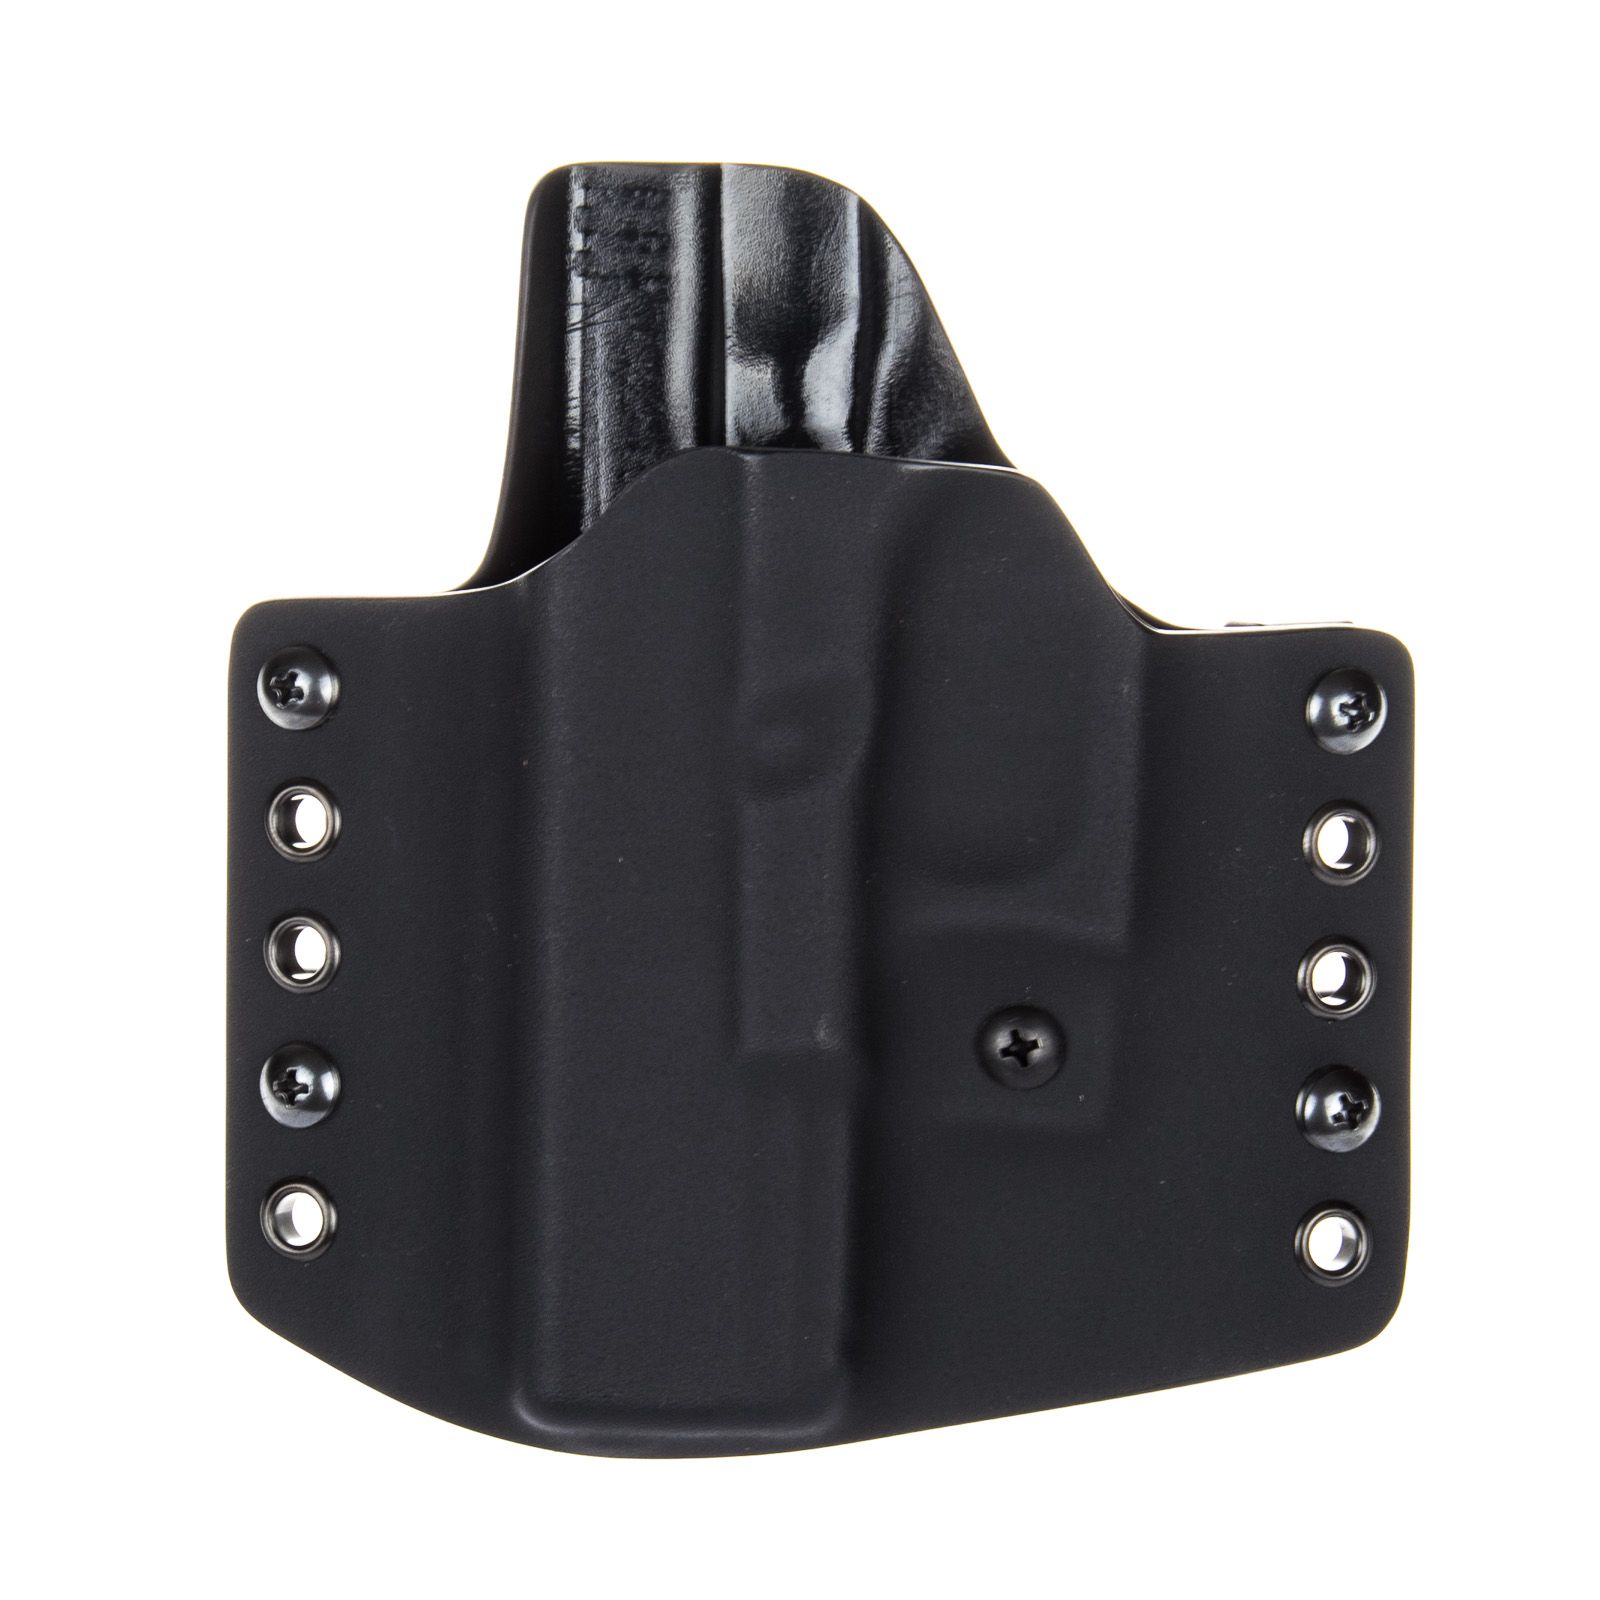 Levostranné vnější pouzdro RHholster, poloviční sweatguard, černá/černá (Glock 43/43X)